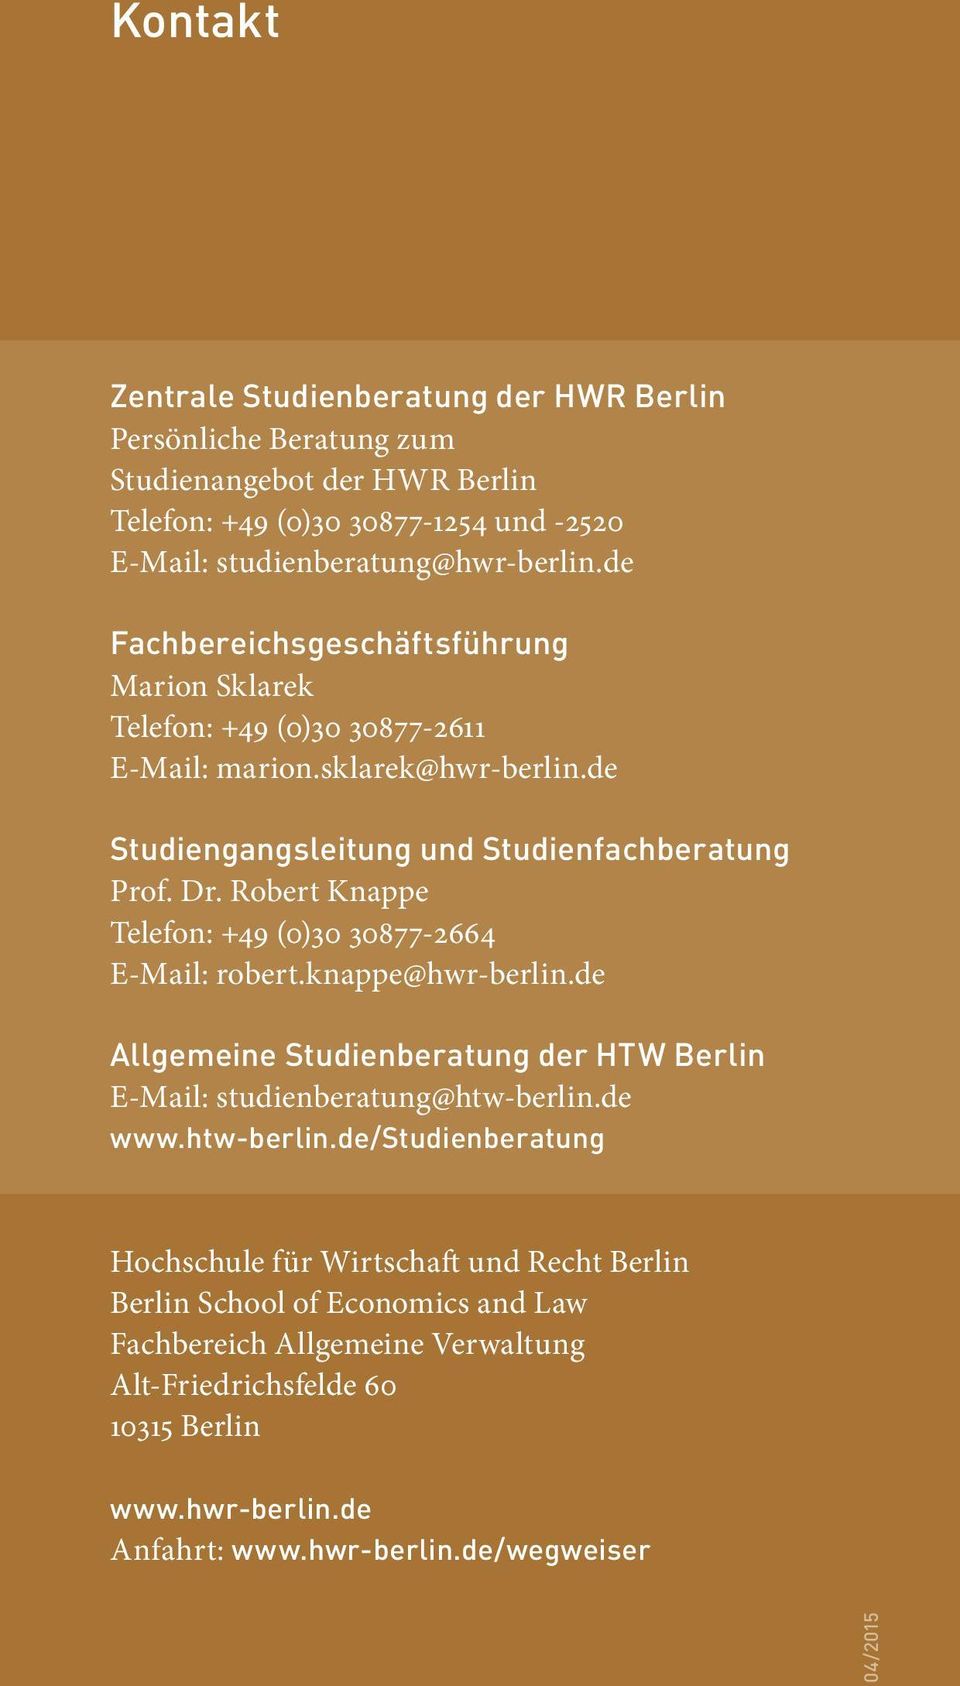 Robert Knappe Telefon: +49 (0)30 30877-2664 E-Mail: robert.knappe@hwr-berlin.de Allgemeine Studienberatung der HTW Berlin E-Mail: studienberatung@htw-berlin.